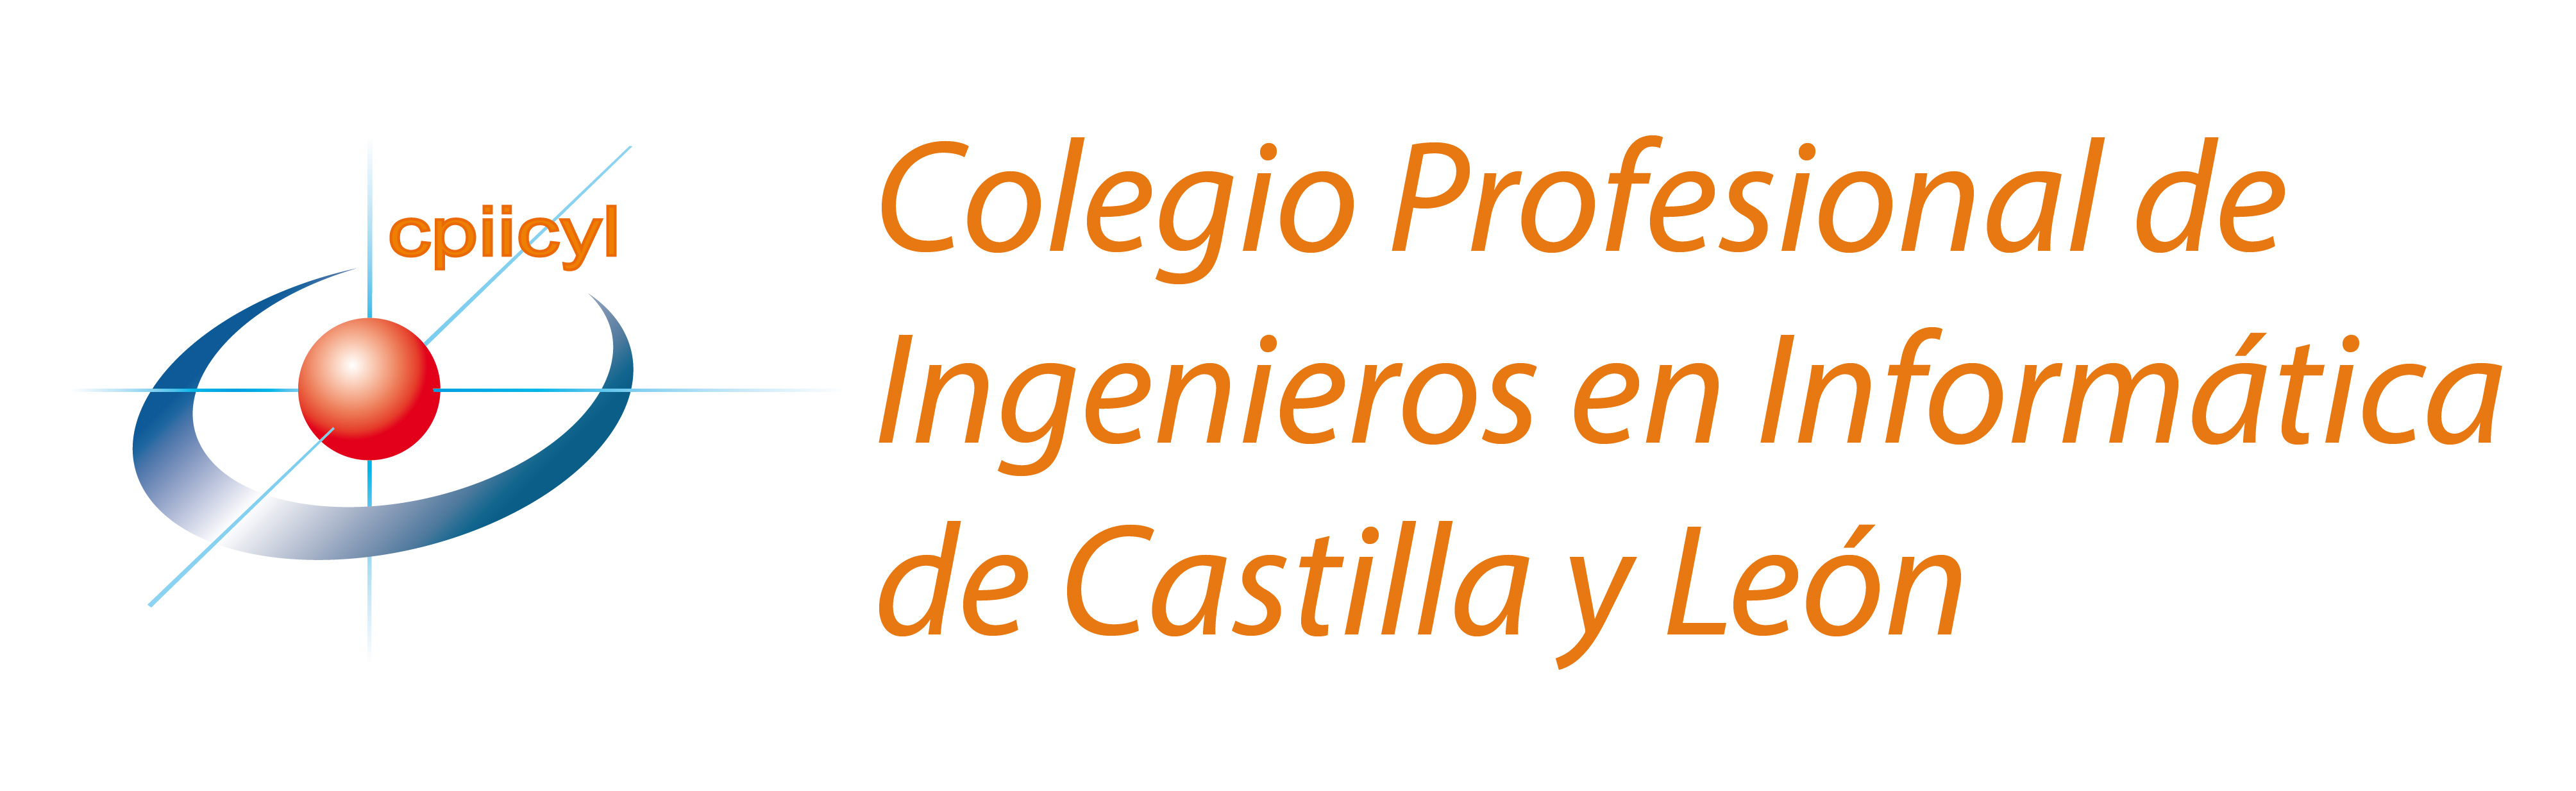 El colegio Profesional de Ingenieros en Informática de Castilla y León 